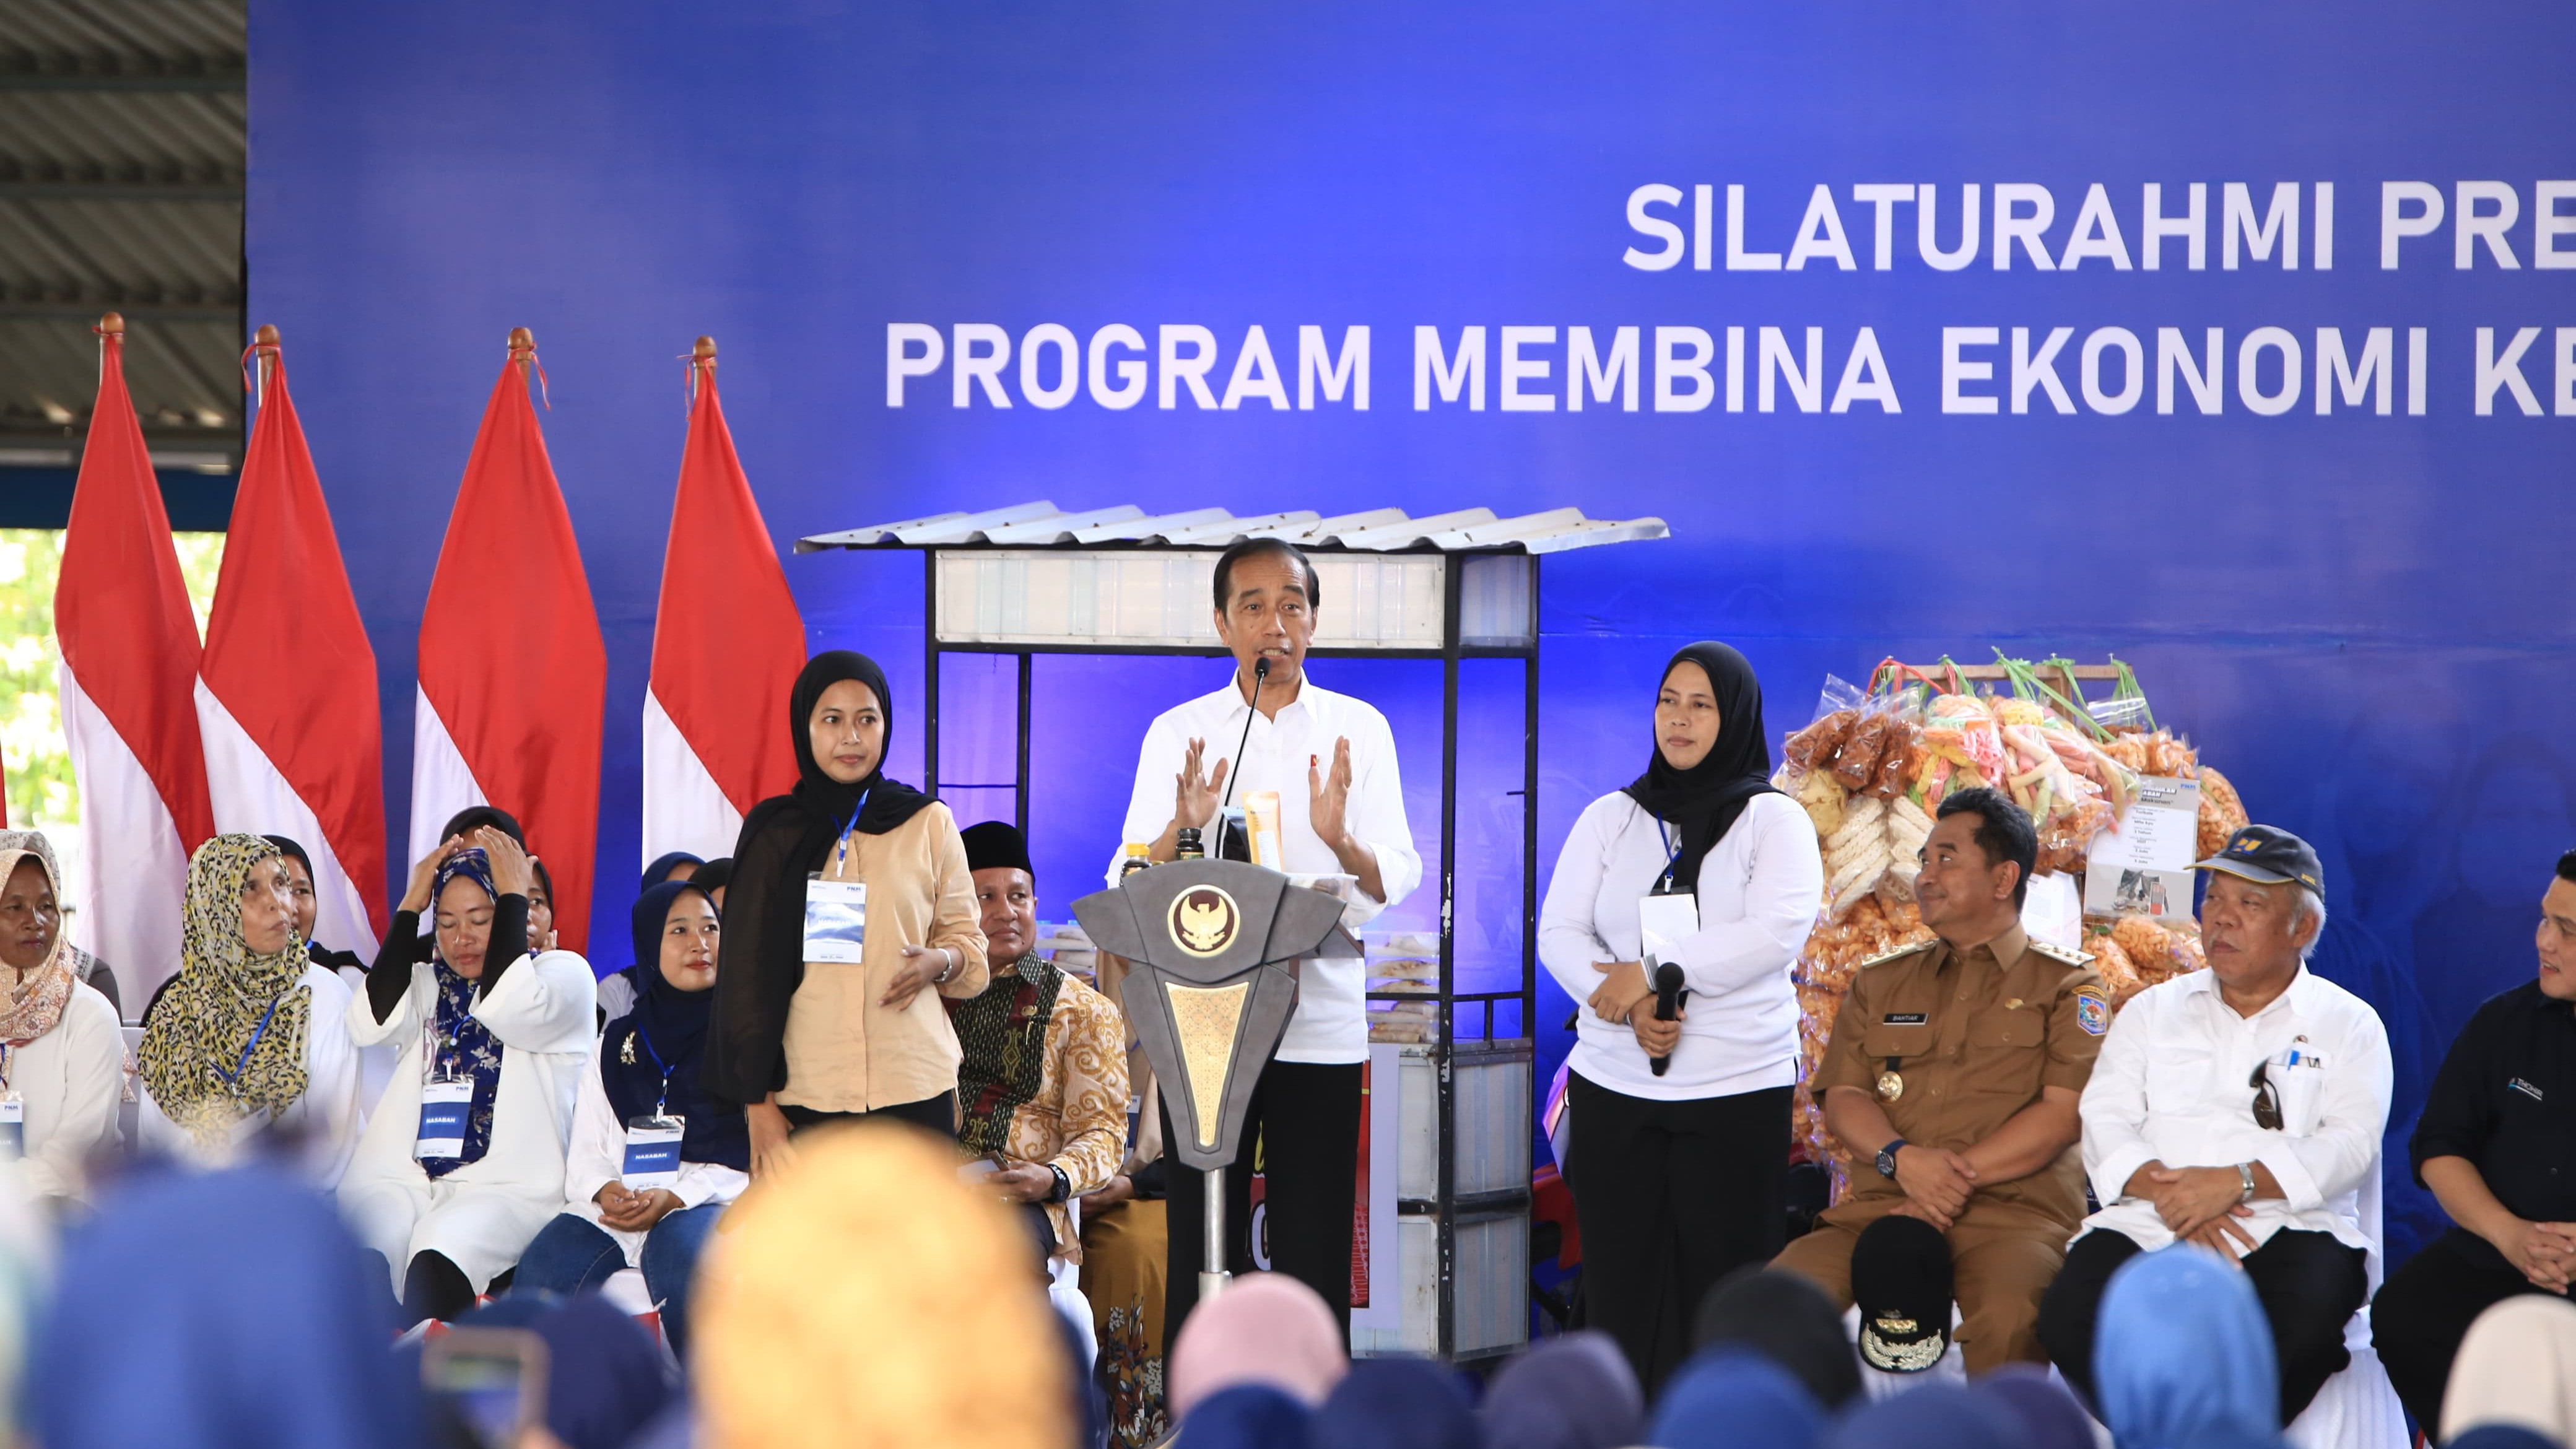 Kedatangan Presiden Jokowi disambut semangat 5.000 nasabah PNM Mekaar dan tenaga pendamping atau Account Officer (AO), didampingi oleh Menteri BUMN Erick Thohir dan Menteri PUPR Basuki Hadimuljono.